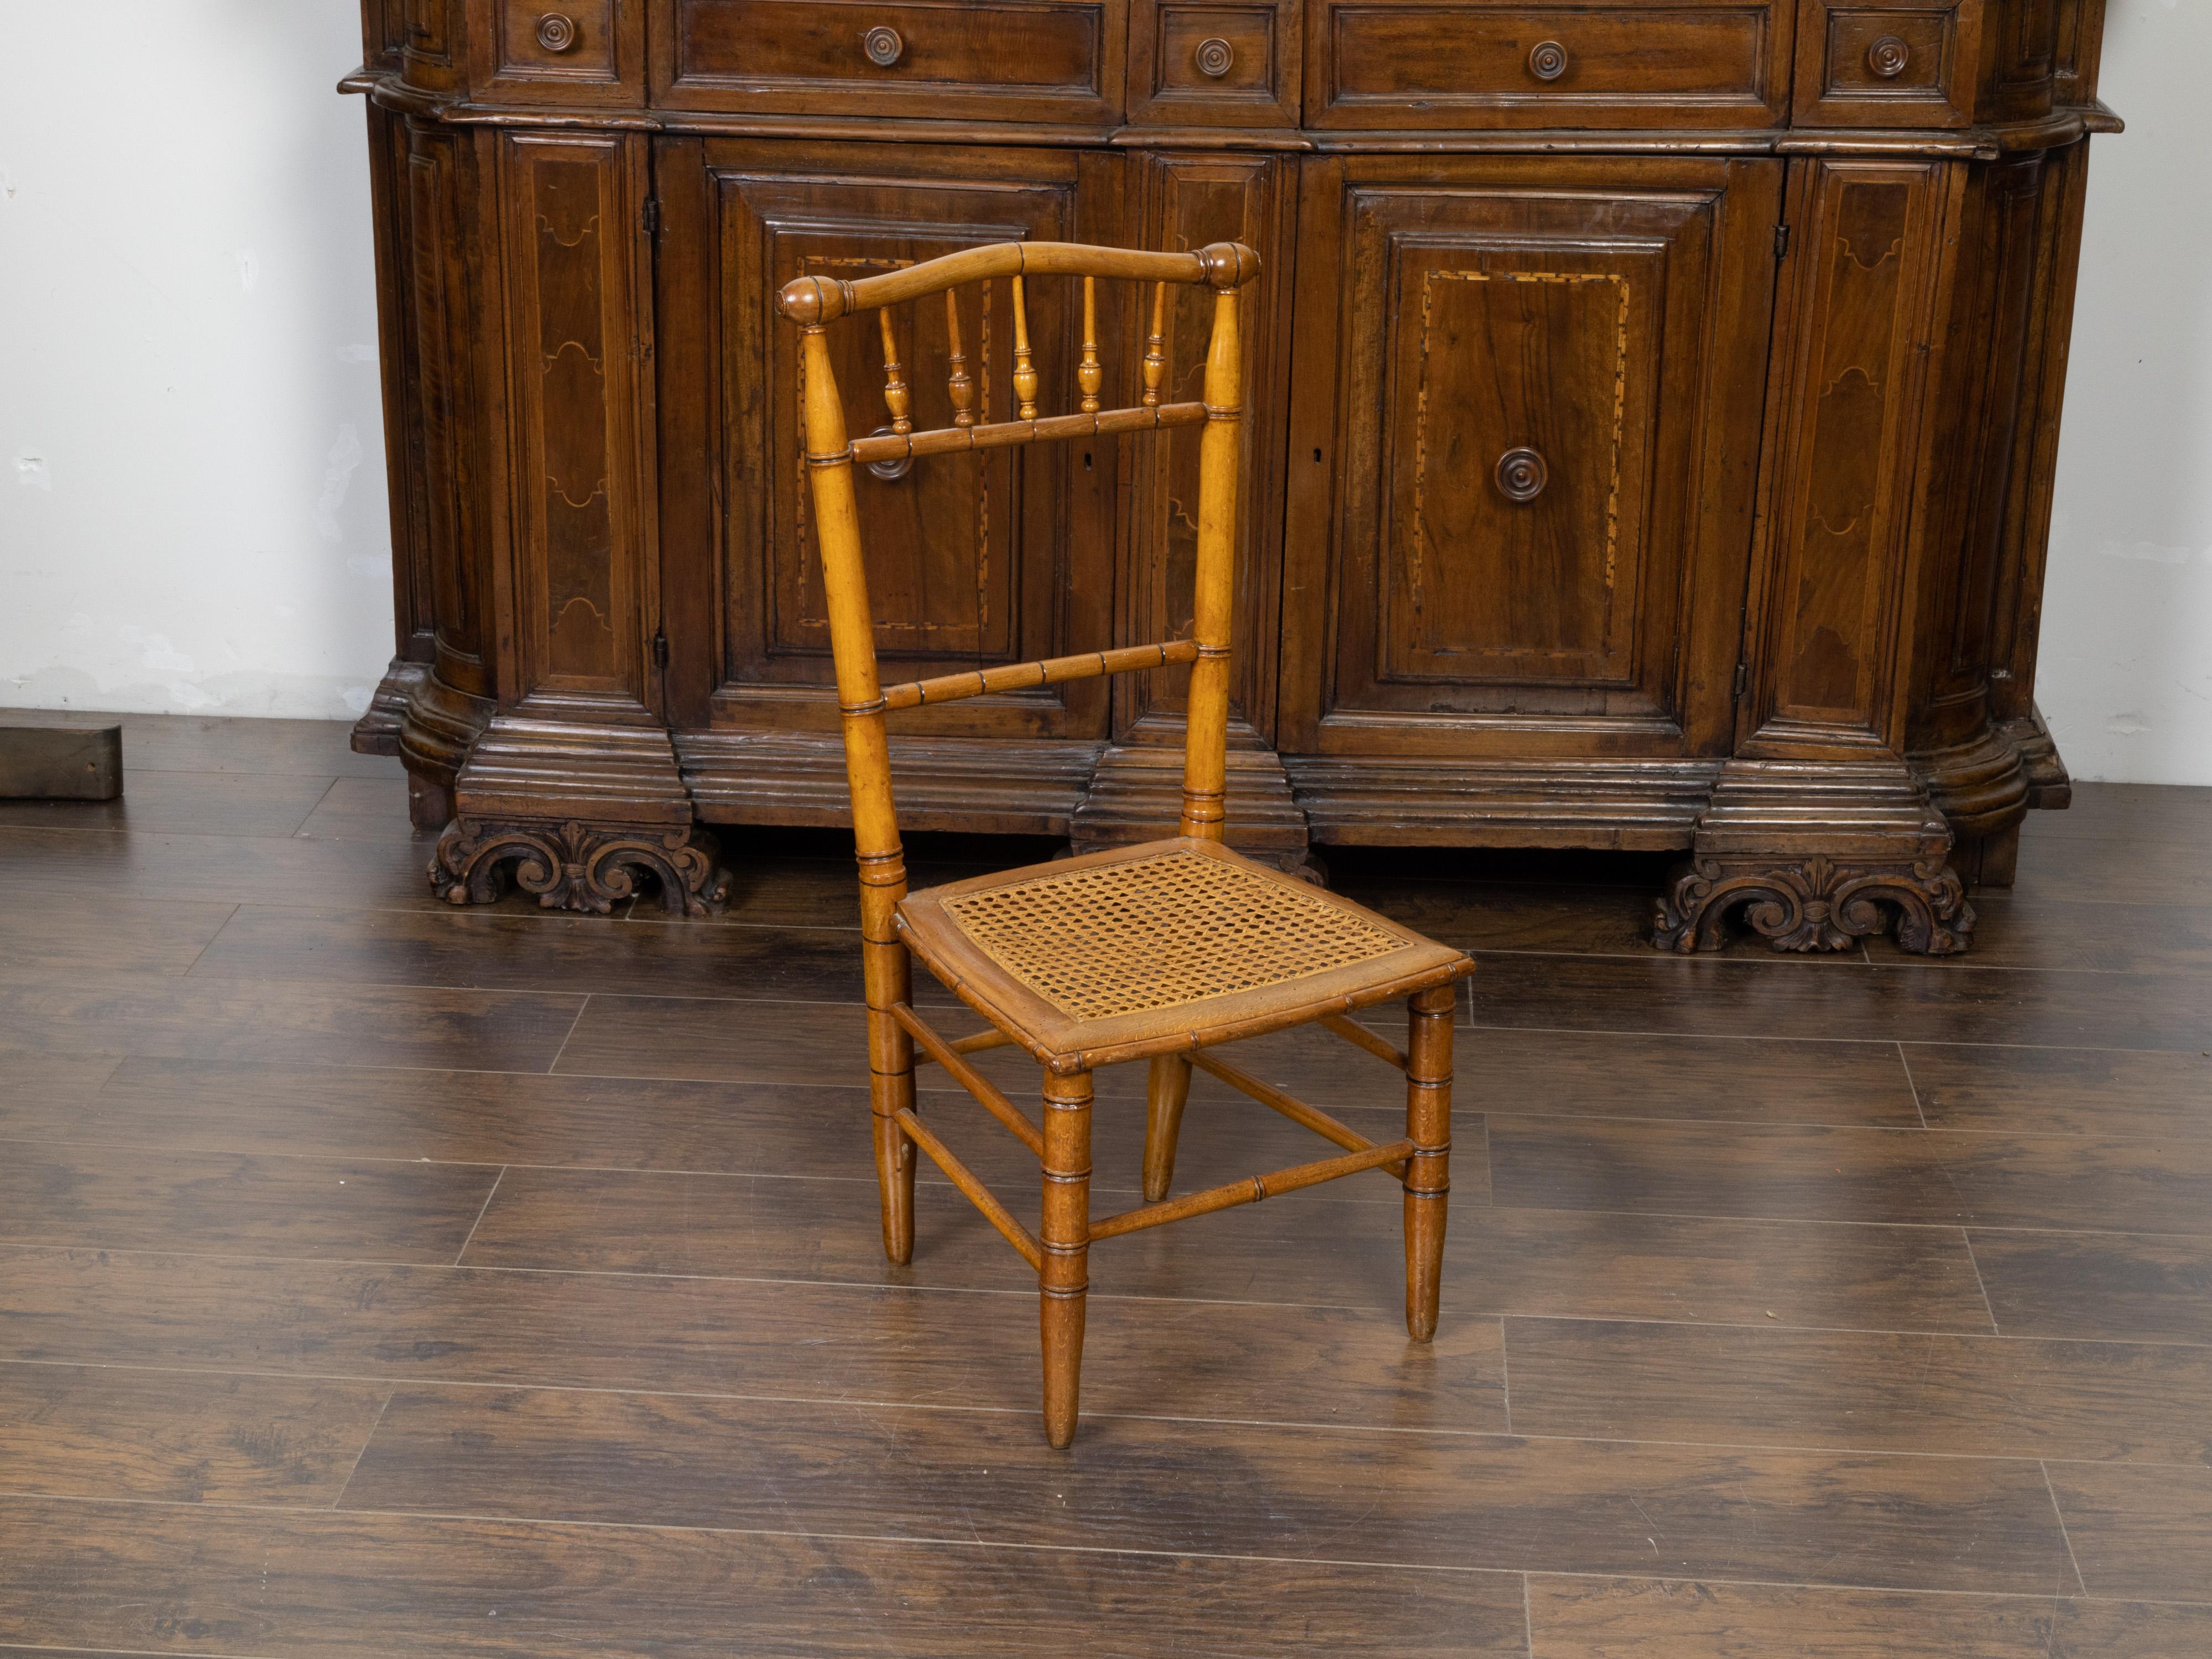 Chaise à pantoufles en bambou du début du 20e siècle, avec assise en rotin. Créée en Angleterre au début du 20e siècle, cette chaise pantoufle en bambou présente un dossier en fuseau avec une traverse supérieure incurvée, reposant sur une assise